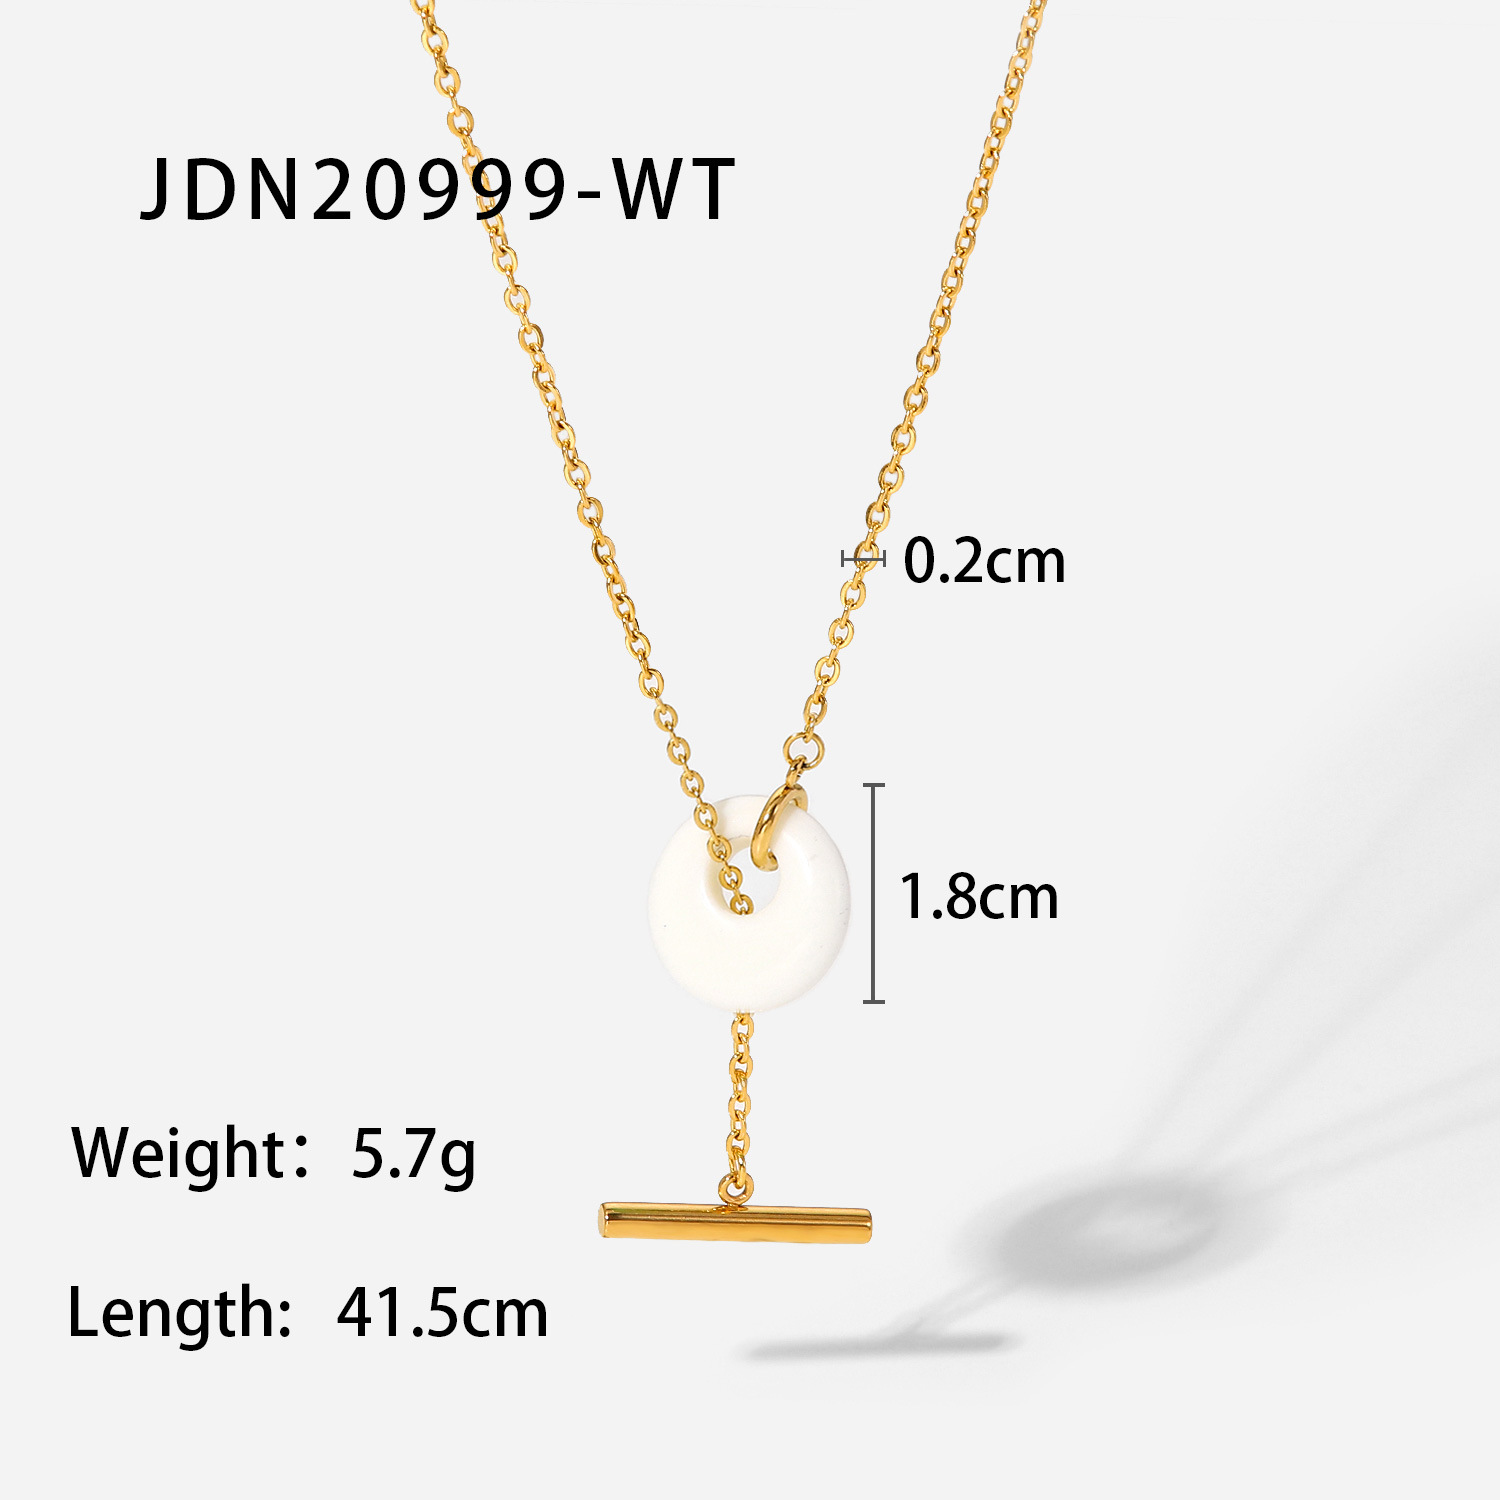 JDN20999-WT